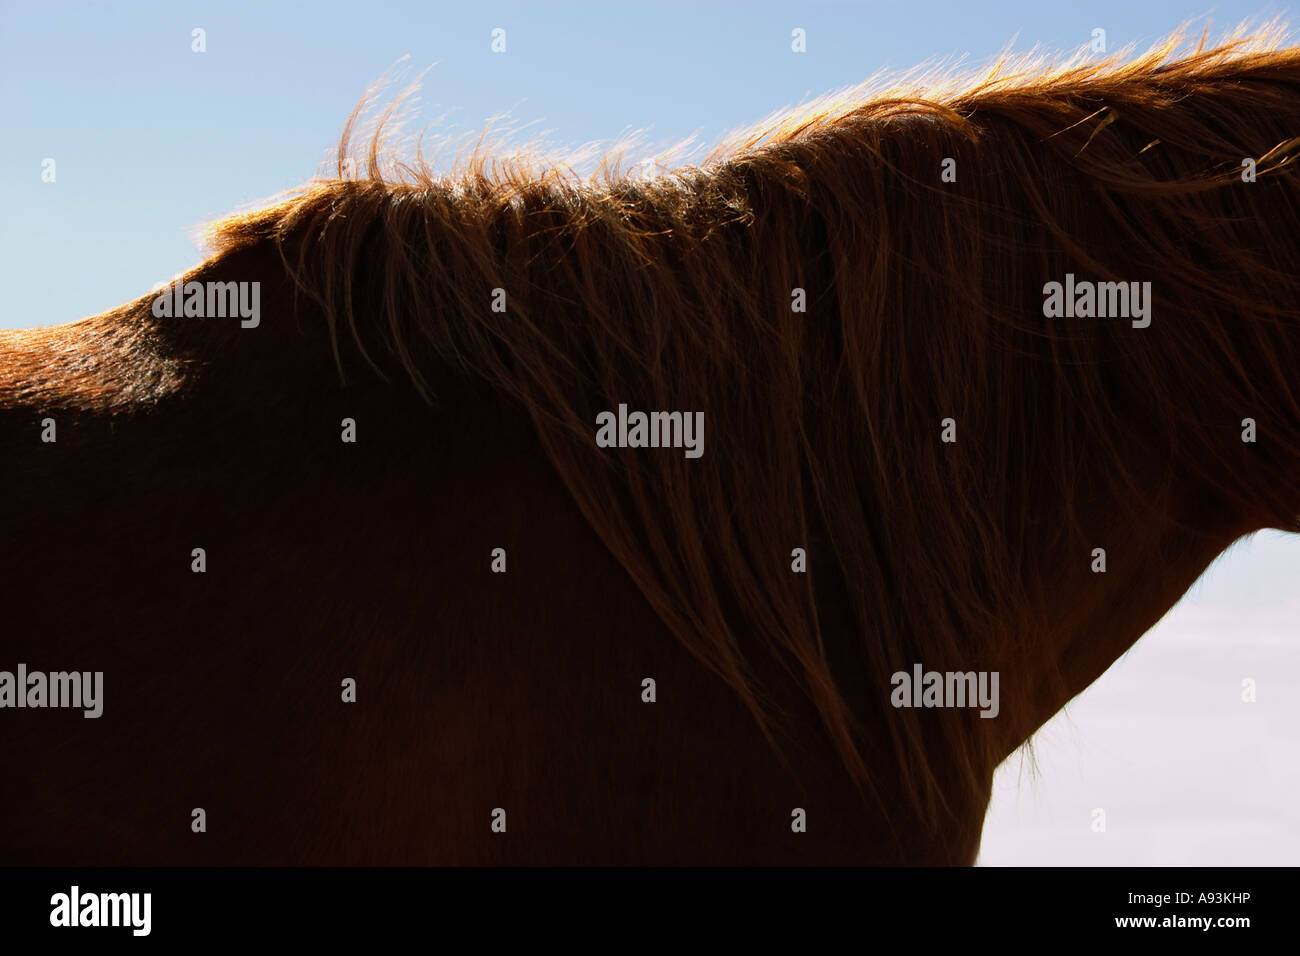 Cheval brun contre ciel, close-up de cou et mane Banque D'Images